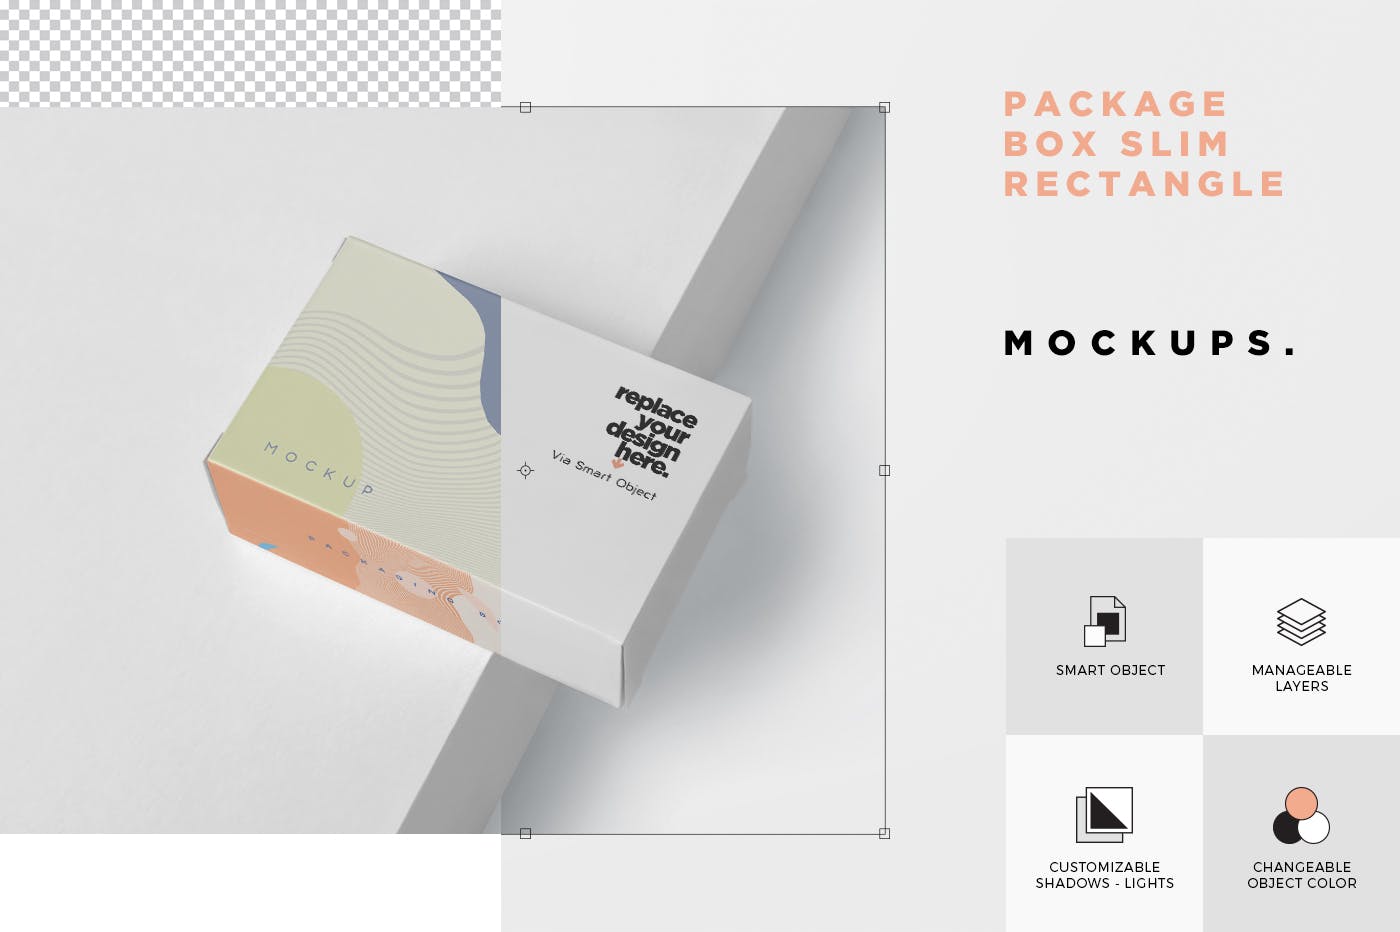 扁平矩形产品包装盒效果图第一素材精选 Package Box Mockup – Slim Rectangle Shape插图(6)